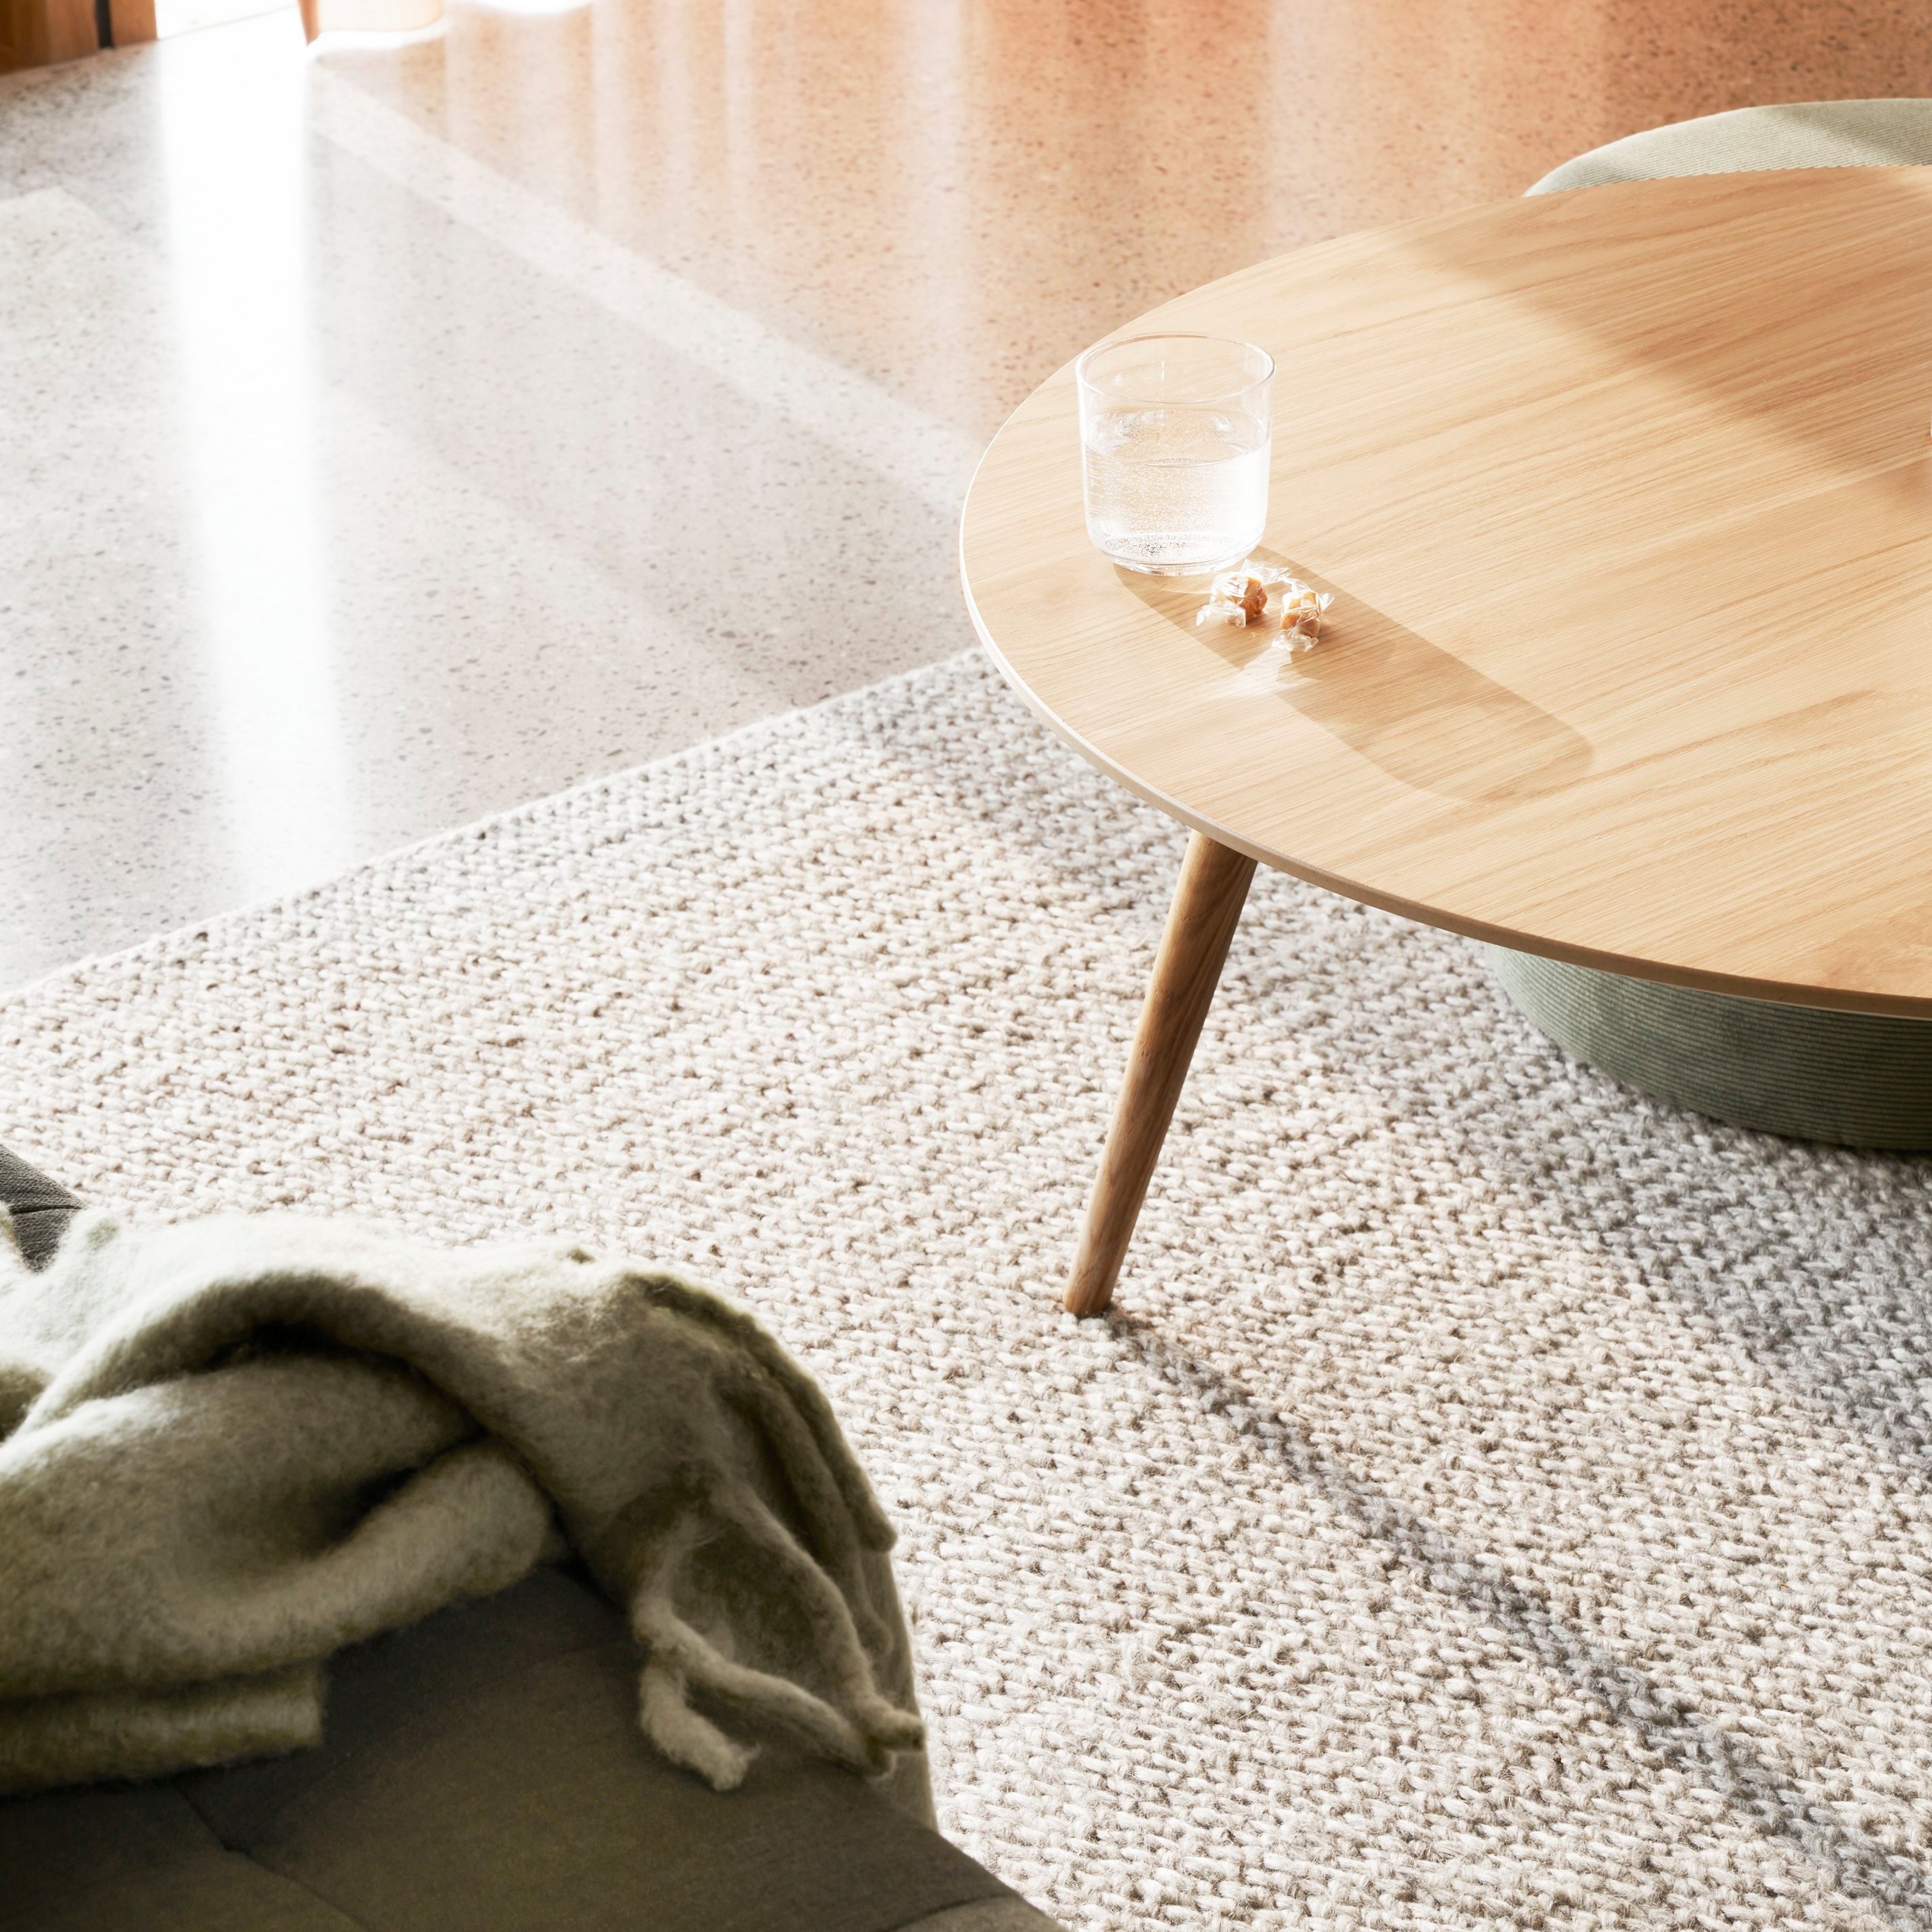 Strukturierter Teppich mit einem runden Holztisch, einem Glas Wasser und einer weichen Decke im Sonnenlicht.